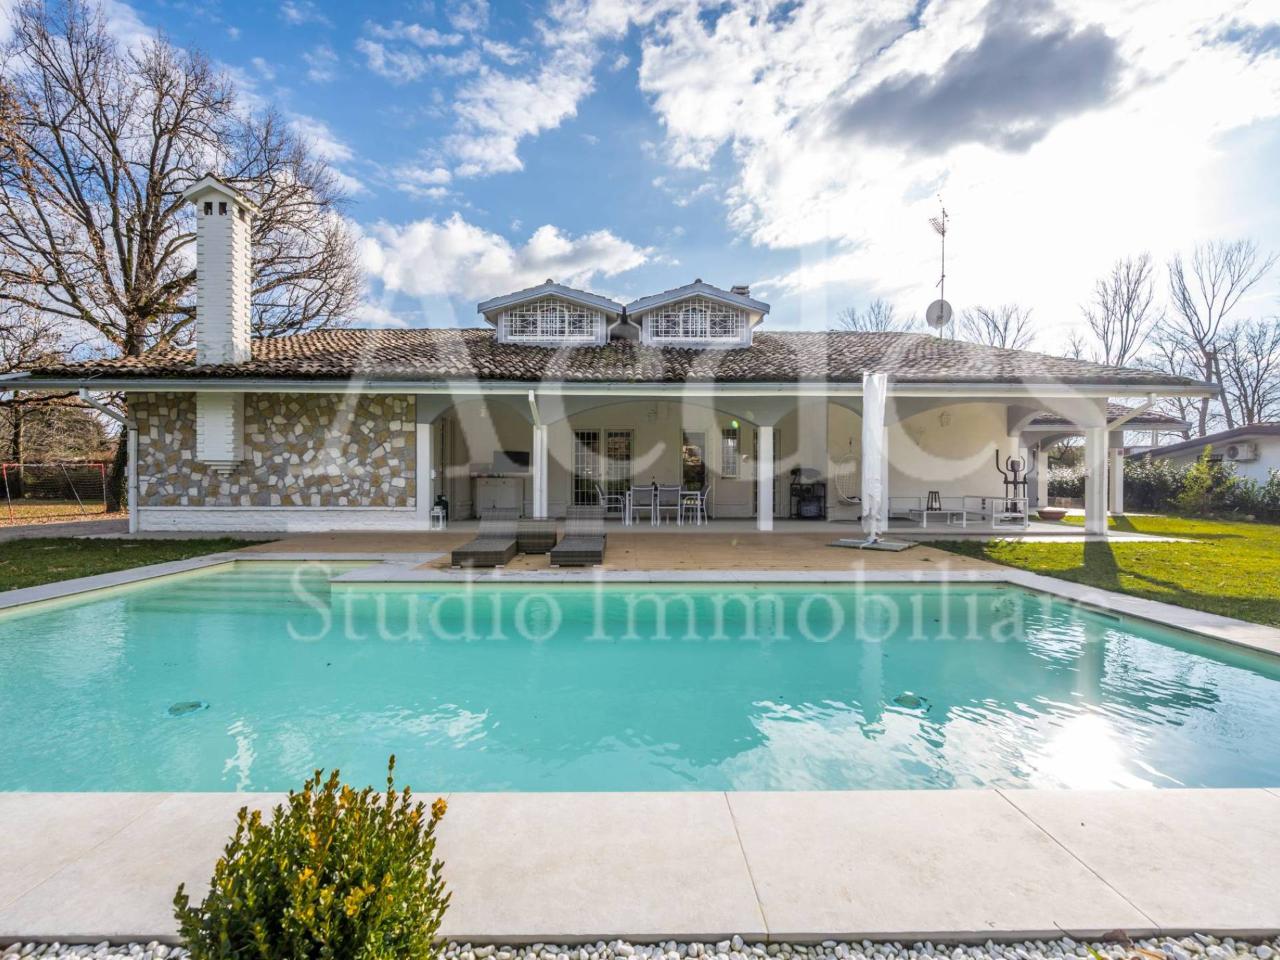 Villa in vendita a Castelnuovo Rangone